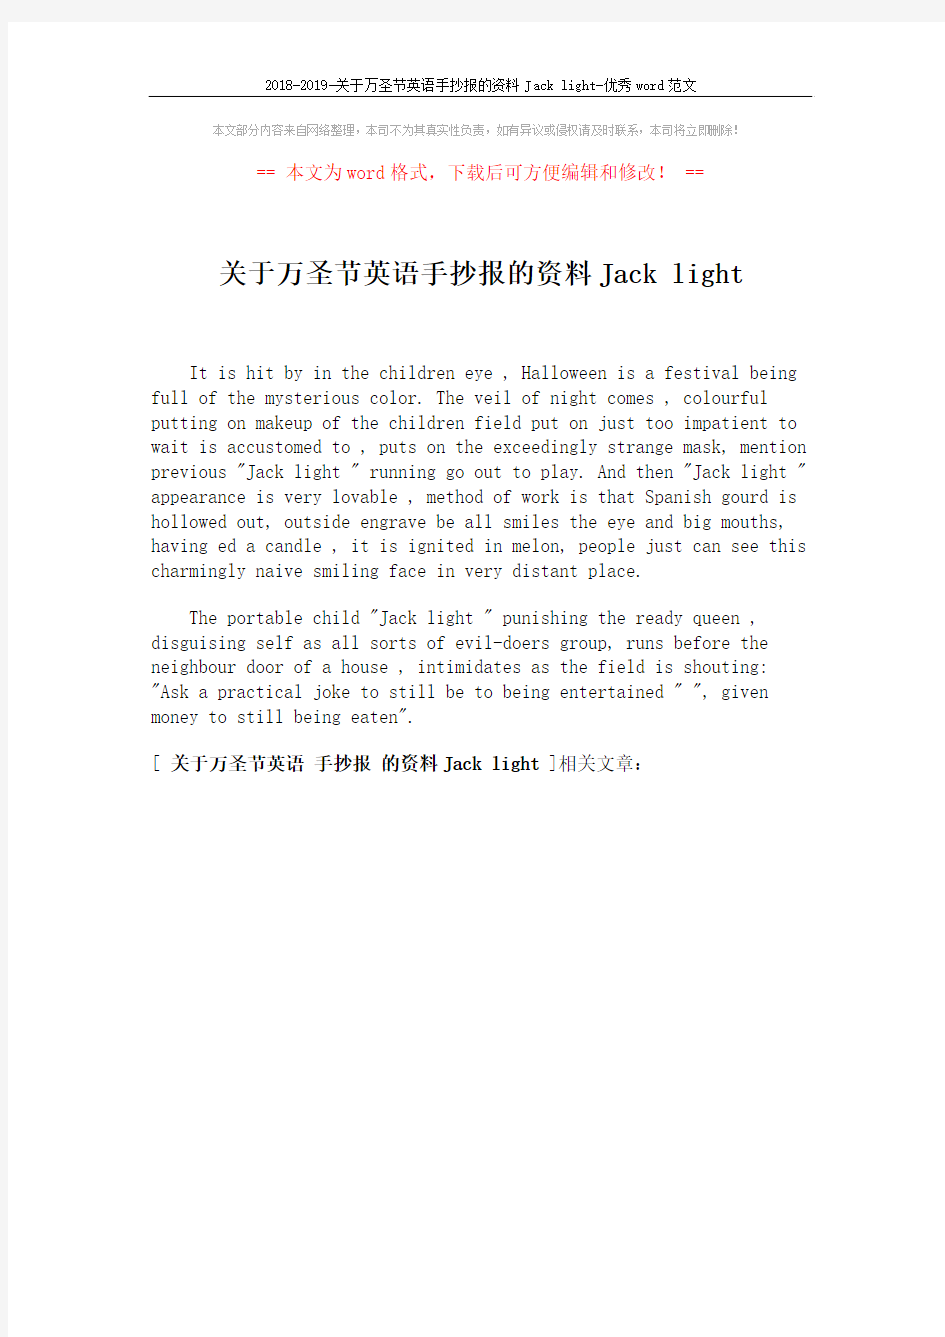 2018-2019-关于万圣节英语手抄报的资料Jack light-优秀word范文 (1页)